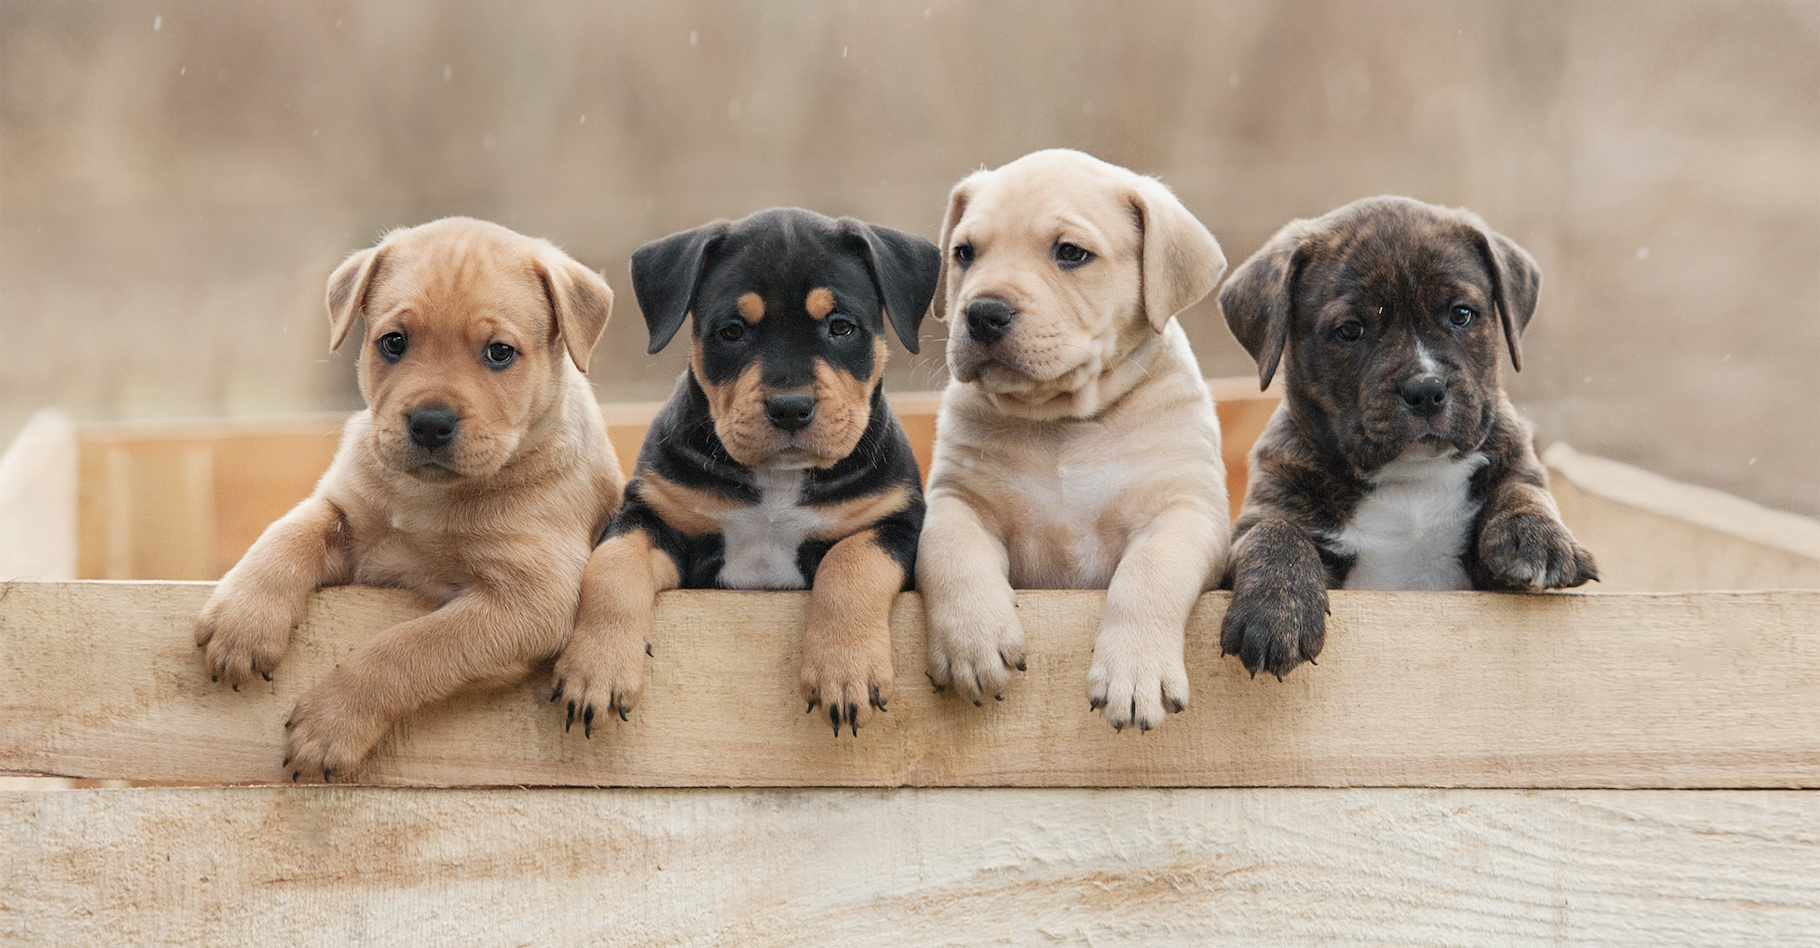 À l’heure où ces jeunes chiens se lancent dans la vie, des chercheurs comptent sur le Dog Aging Project pour mieux comprendre comment nos amis à quatre pattes vieillissent. © Rita Kochmarjova, Adobe Stock